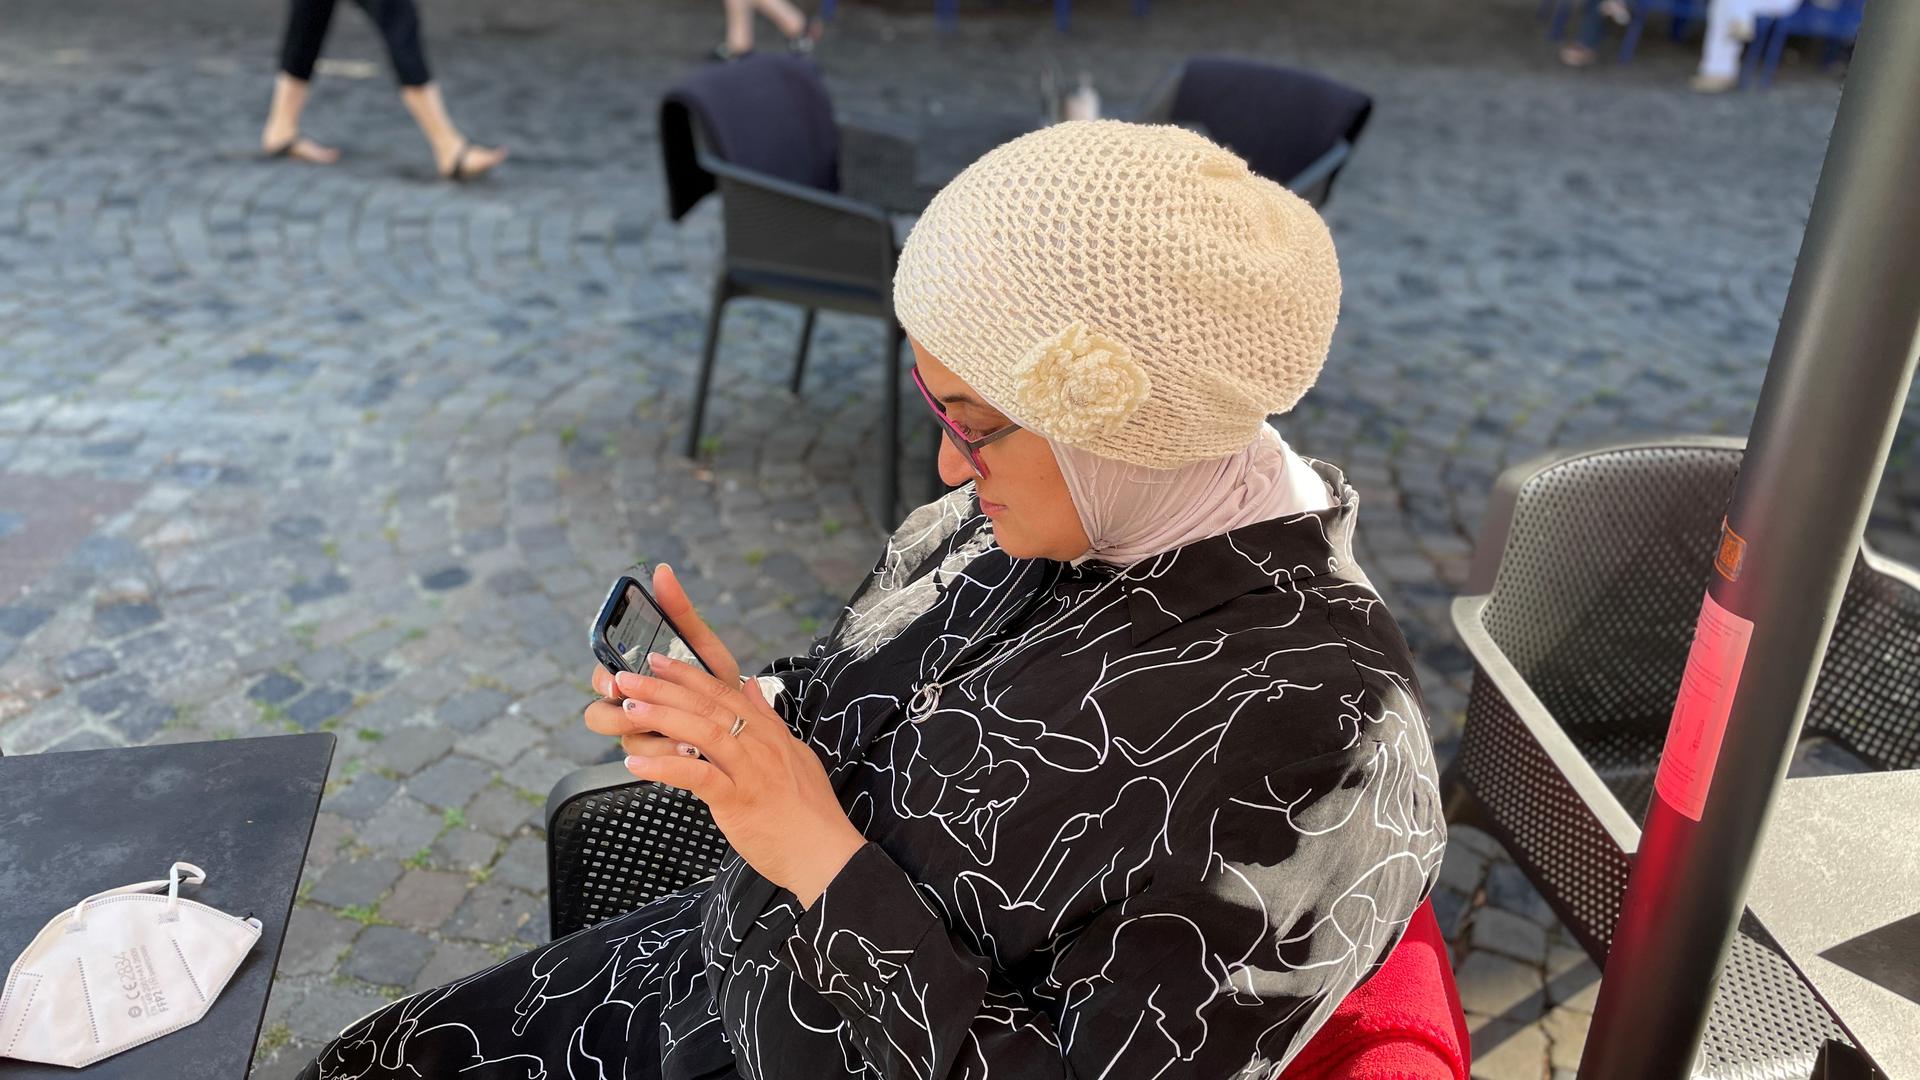 Mit dem Handy sehen: Faten Faroon macht jeden Tag Schnappschüsse. Über die Bilderkennung ihres Mobilfunkgeräts lässt sie sich ihre Umgebung beschreiben.